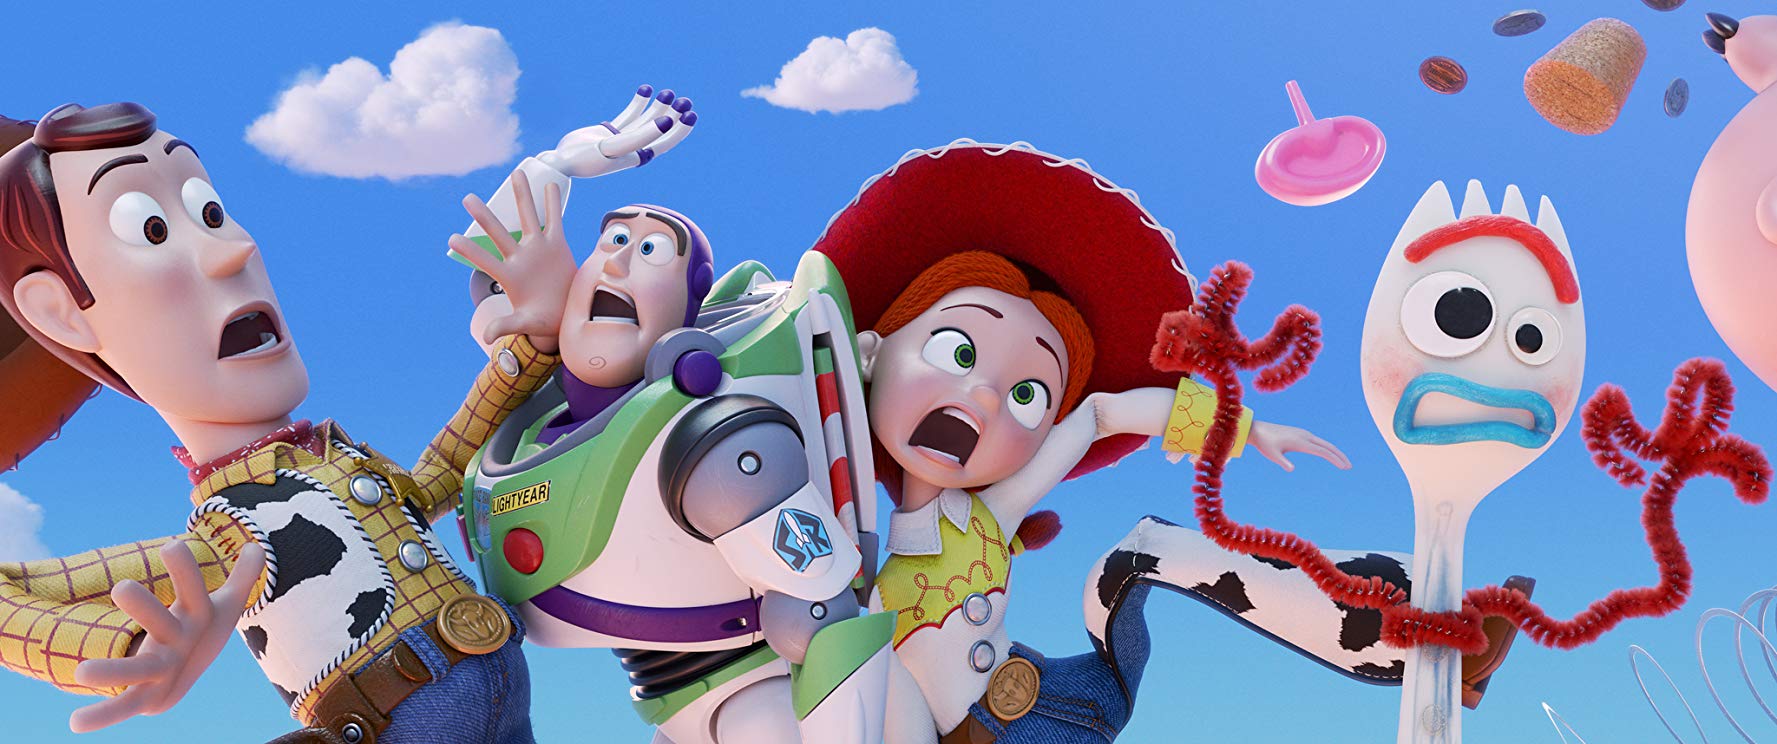 Toy Story 4: Angelo Maggi è la voce di Woody nei trailer italiani